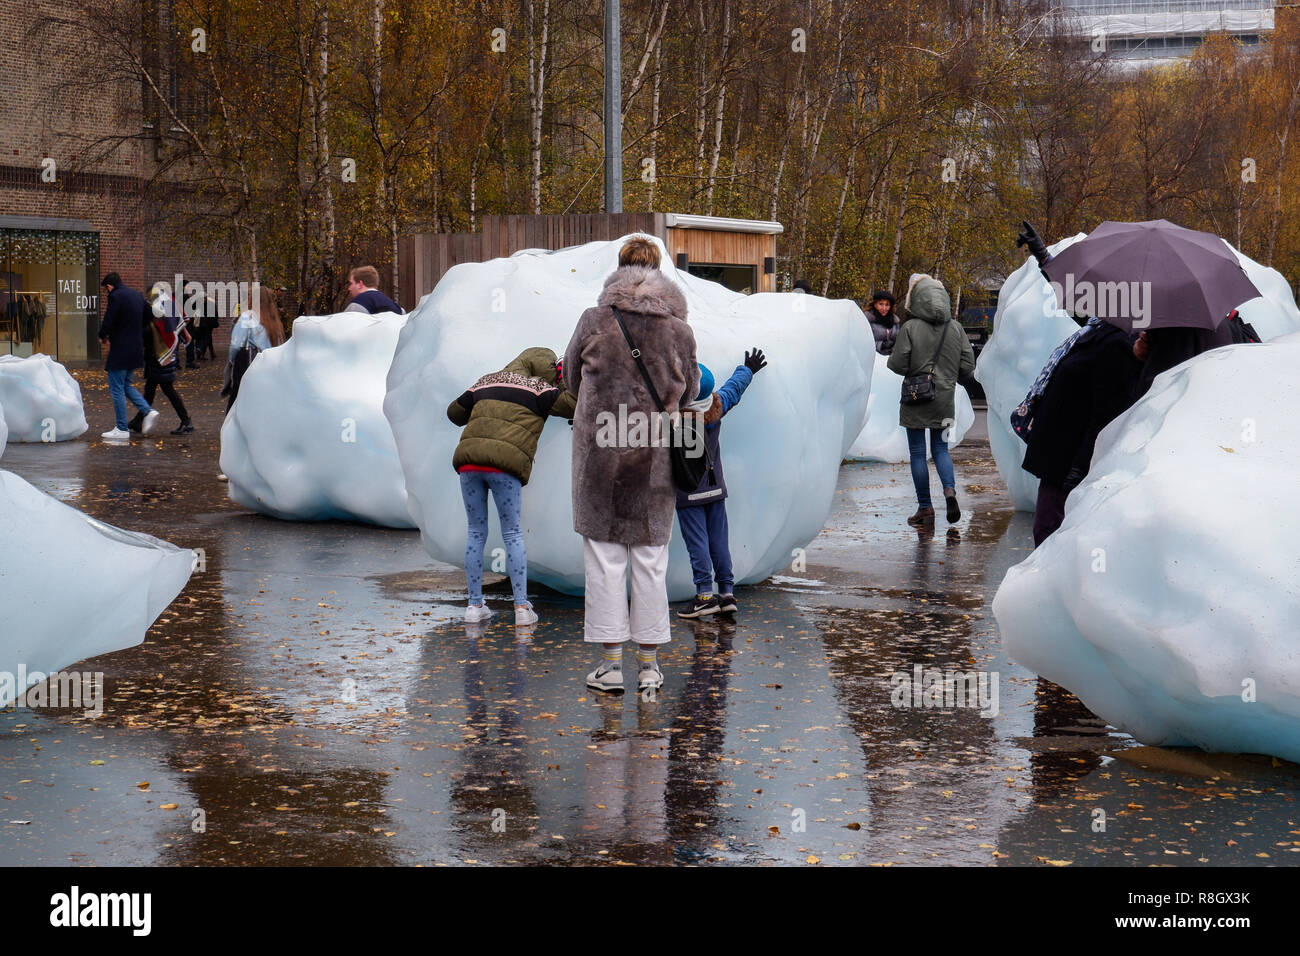 Ice Watch por Olafur Eliasson : gigantescos bloques de hielo de Groenlandia instalados fuera de la Tate Modern de Londres 2018 Foto de stock